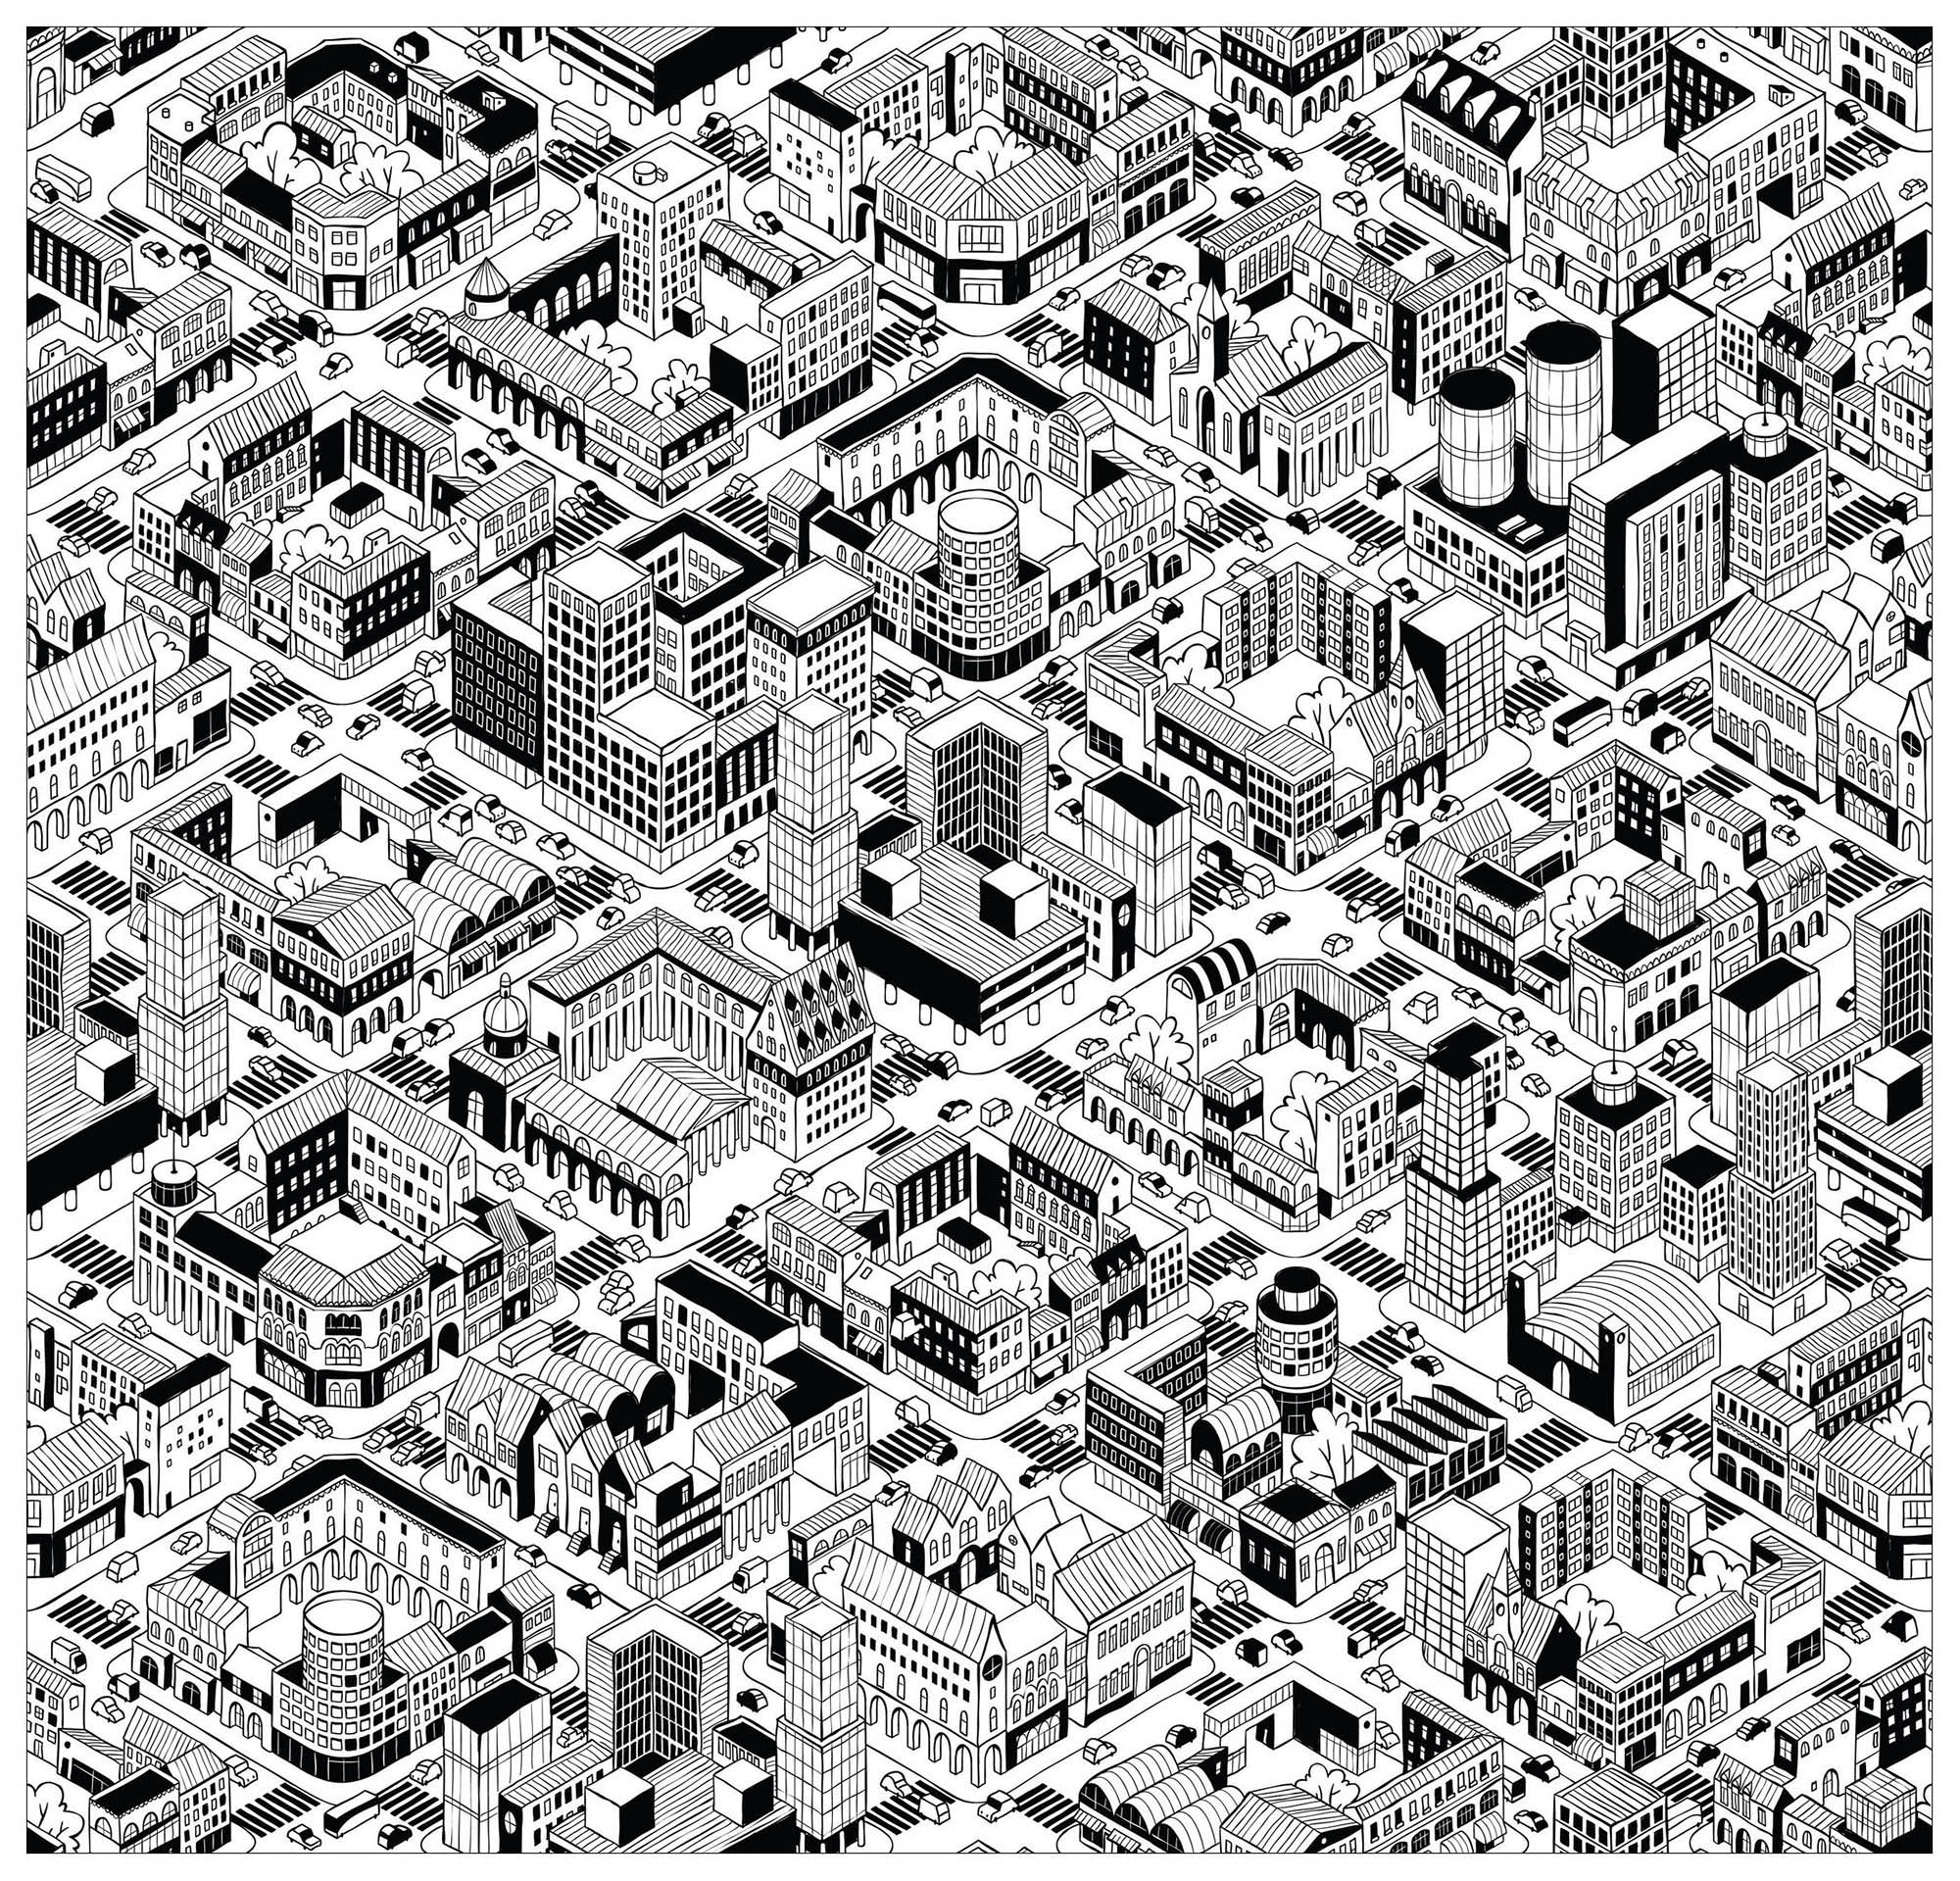 Colorate questa città che sembra essere stata creata nel videogioco Sim City! Incredibili edifici: tutti diversi e unici, Fonte : 123rf   Artista : Ivook